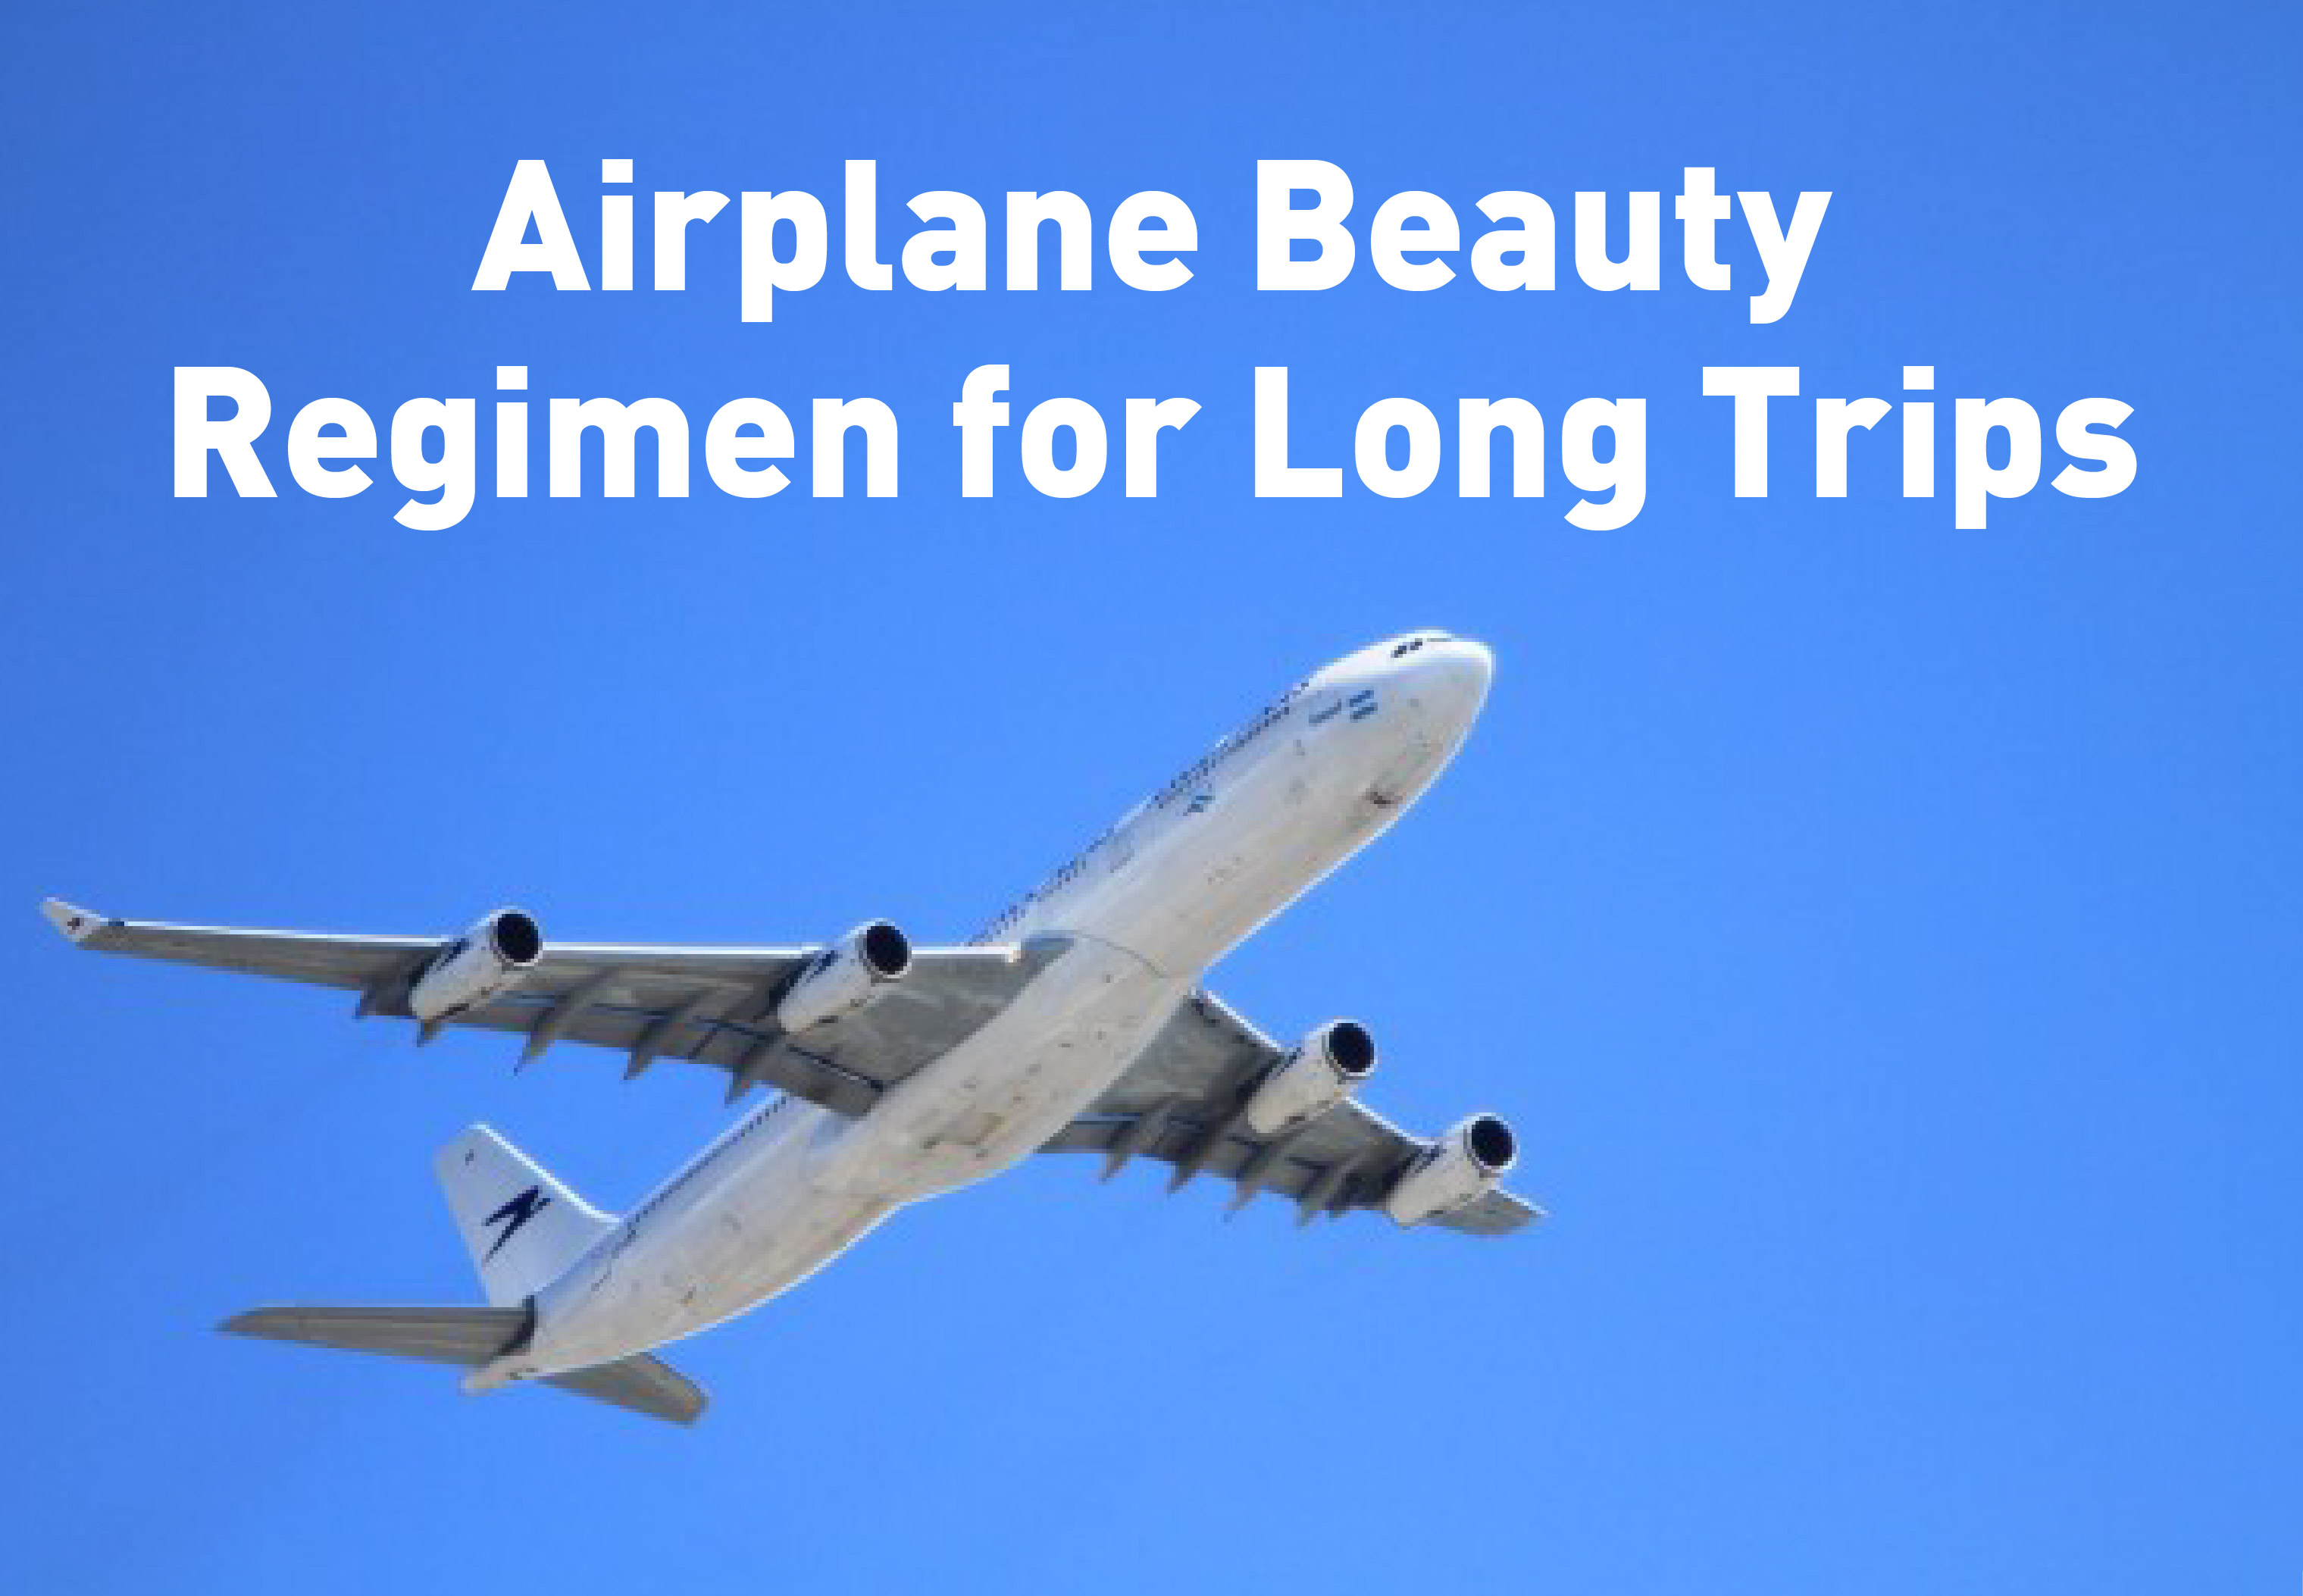 Airplane Beauty regimen for long trips